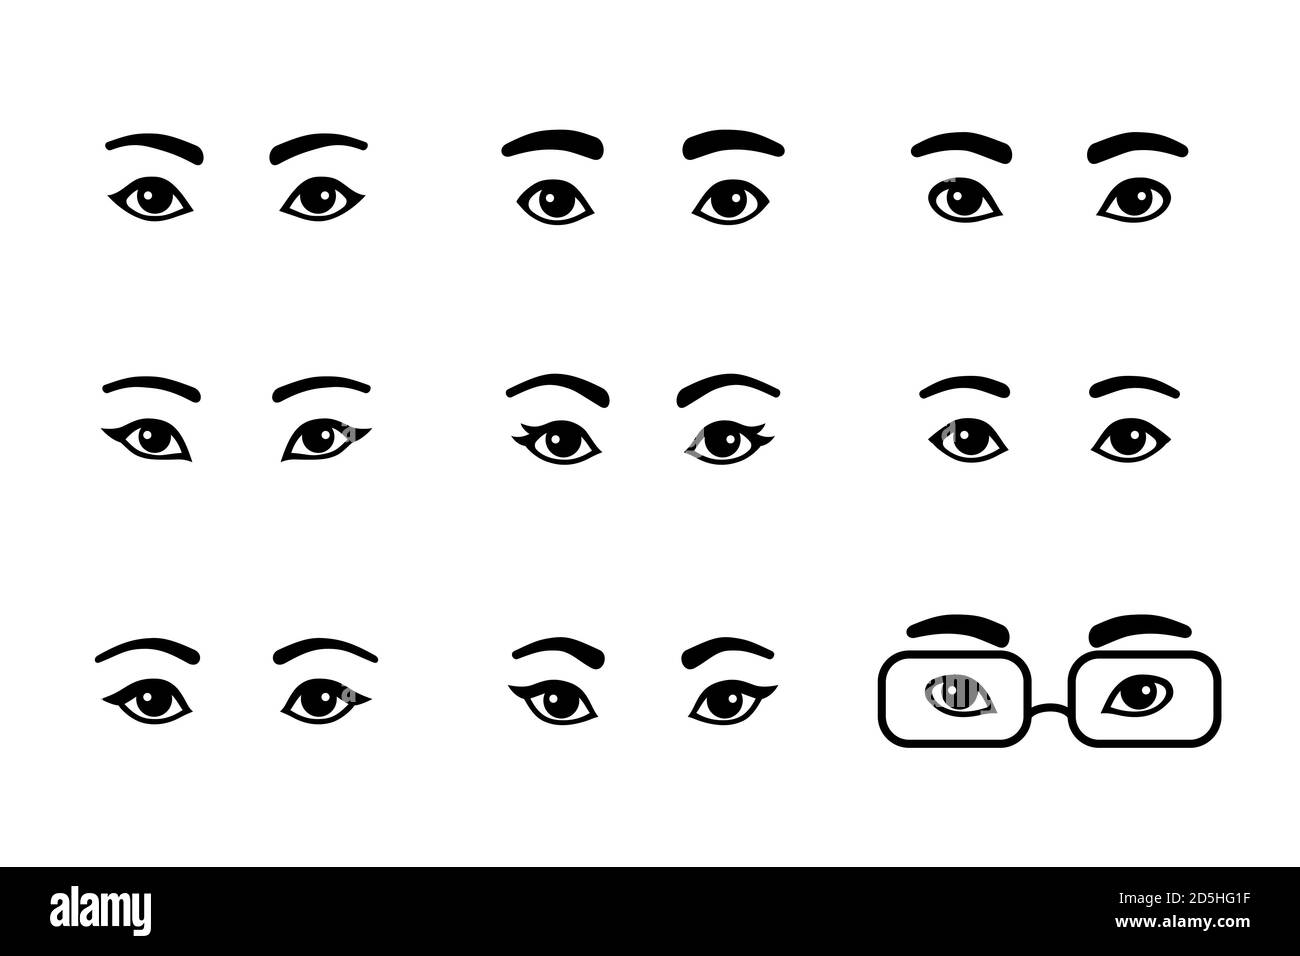 Schwarz und weiß Satz von verschiedenen männlichen und weiblichen Augen. Asiatische, europäische, afrikanische Cartoon einfache Paare von Augen mit Augenbrauen, Form Variationen, Männer und Stock Vektor